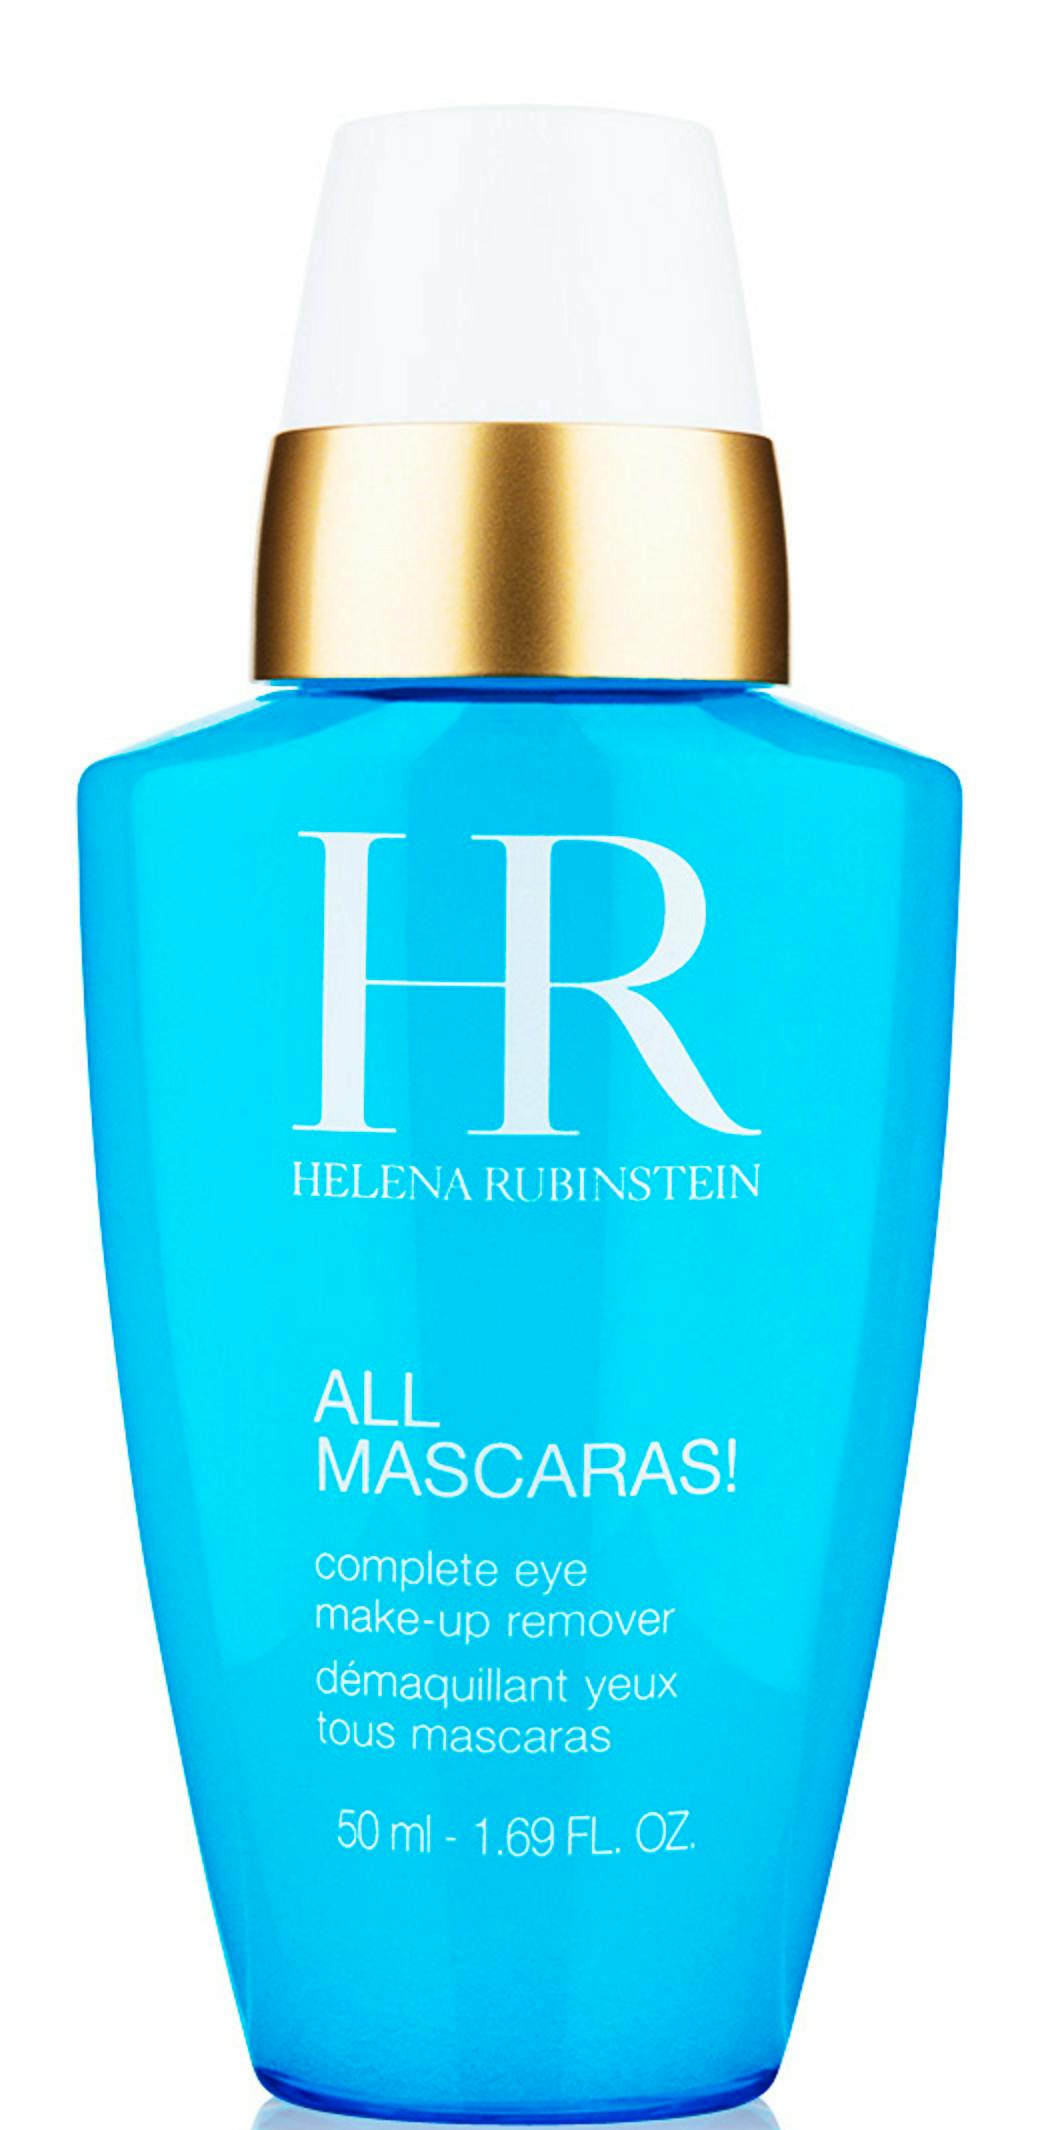 affjedring Uheldig Forfalske Helena Rubinstein All Mascaras! Eye Makeup Remover 50 ml - 65.95 kr